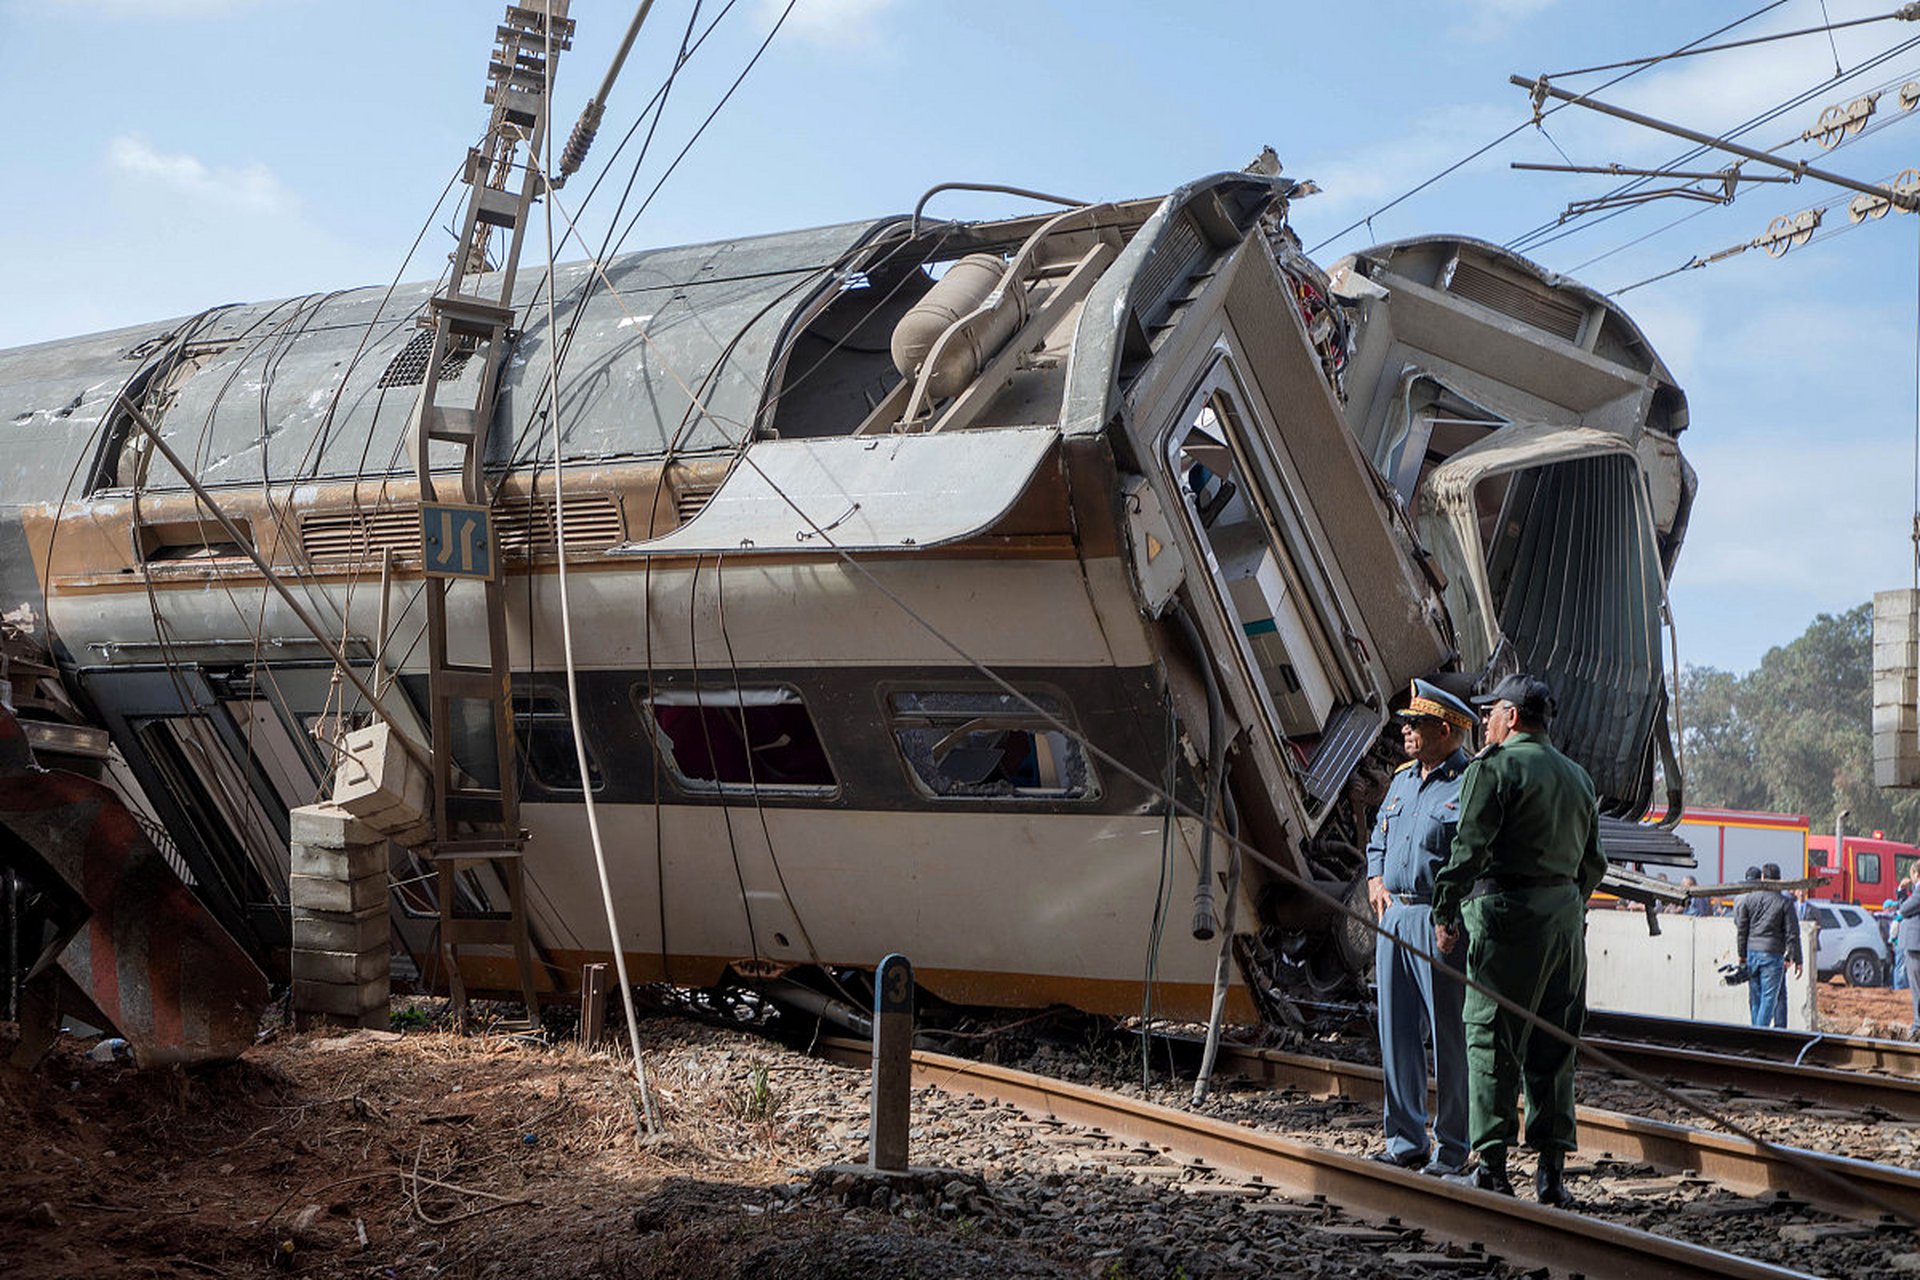 据美国有线电视新闻网报道,为调查美国俄亥俄州东巴勒斯坦城火车脱轨